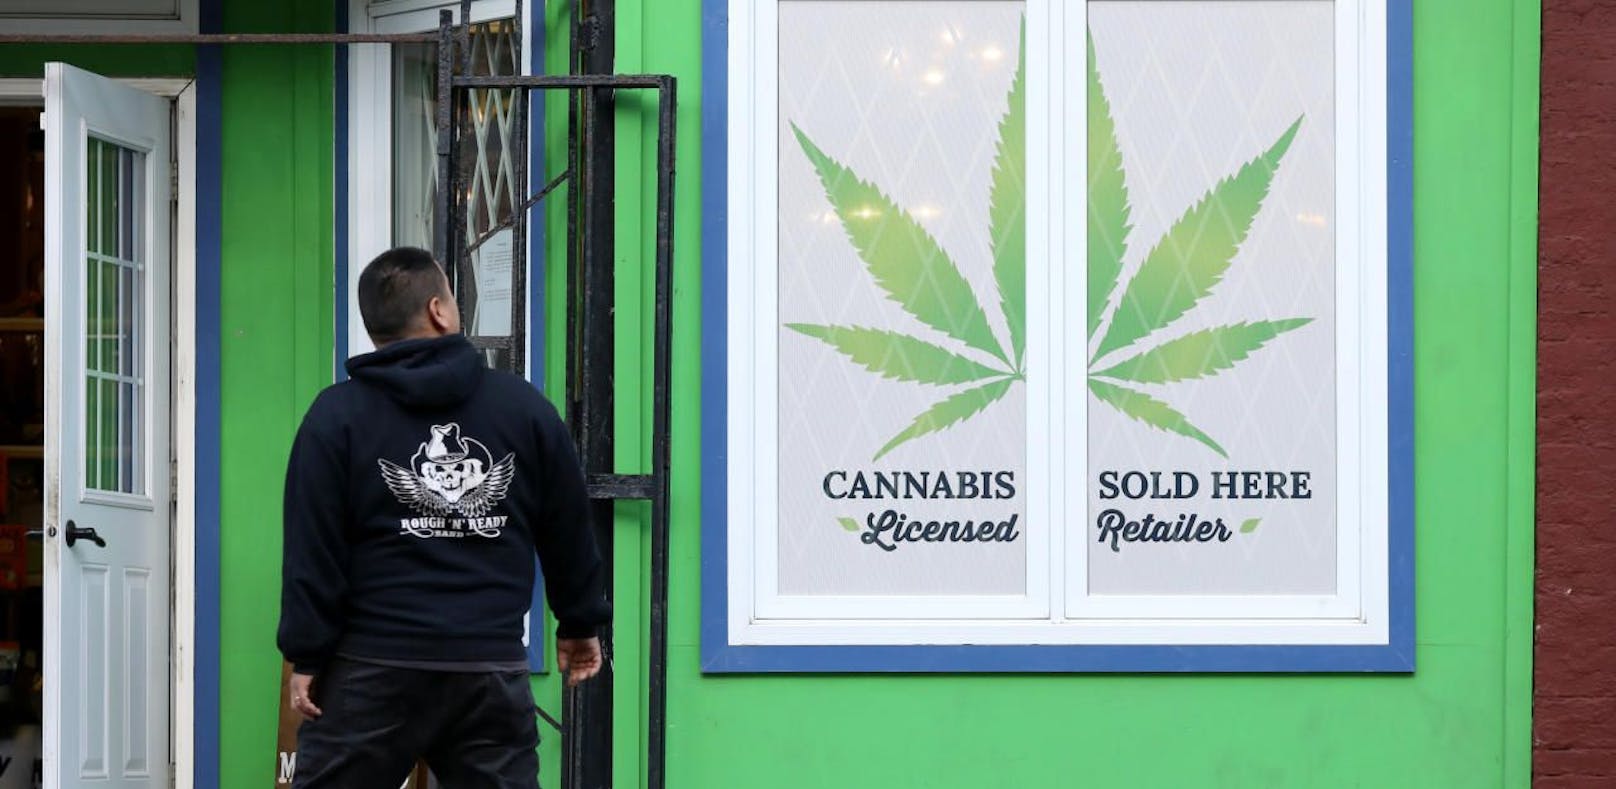 Am 17. Oktober hat Kanada offiziell Cannabis-Konsum und -Verkauf legalisiert.